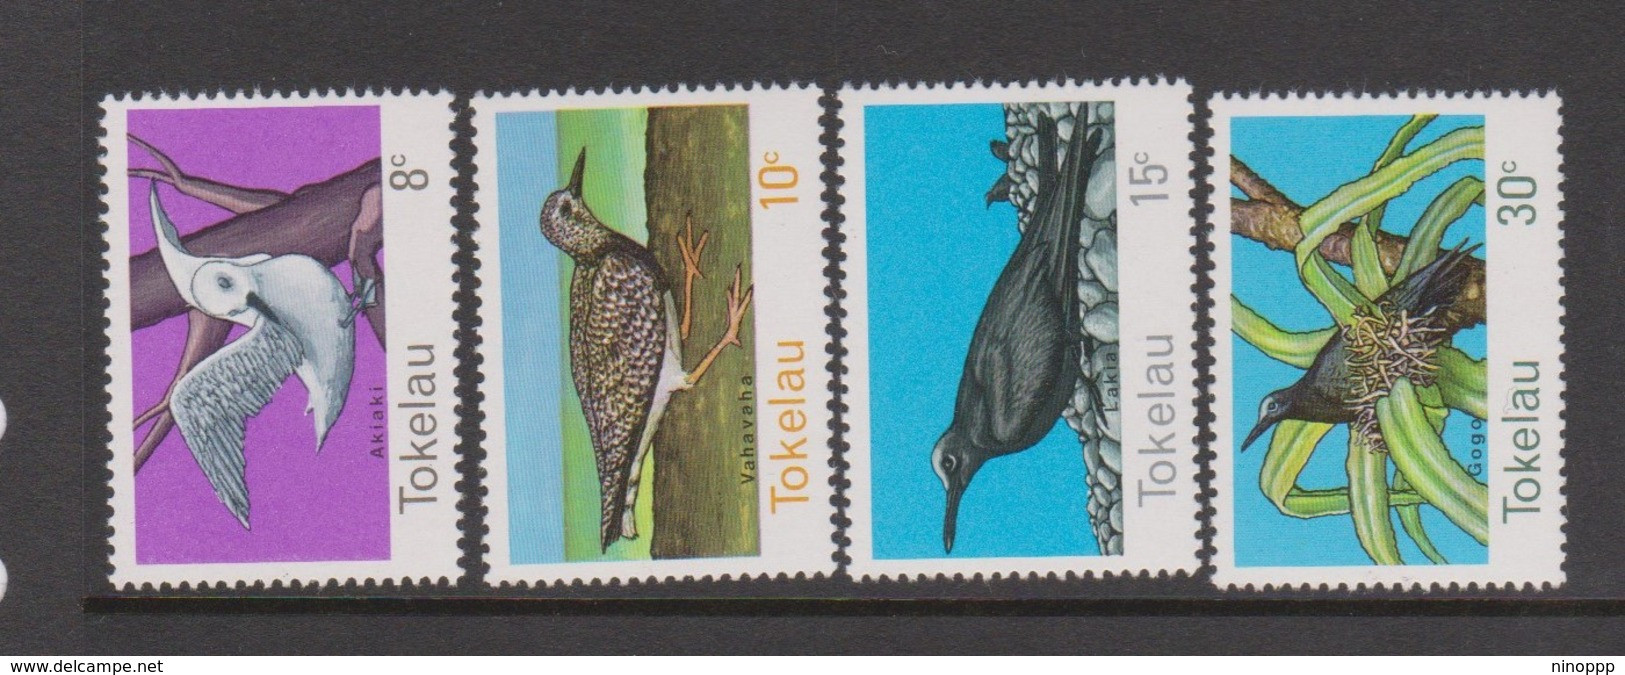 Tokelau SG 57-60 1977 Birds,mint Never Hinged - Tokelau